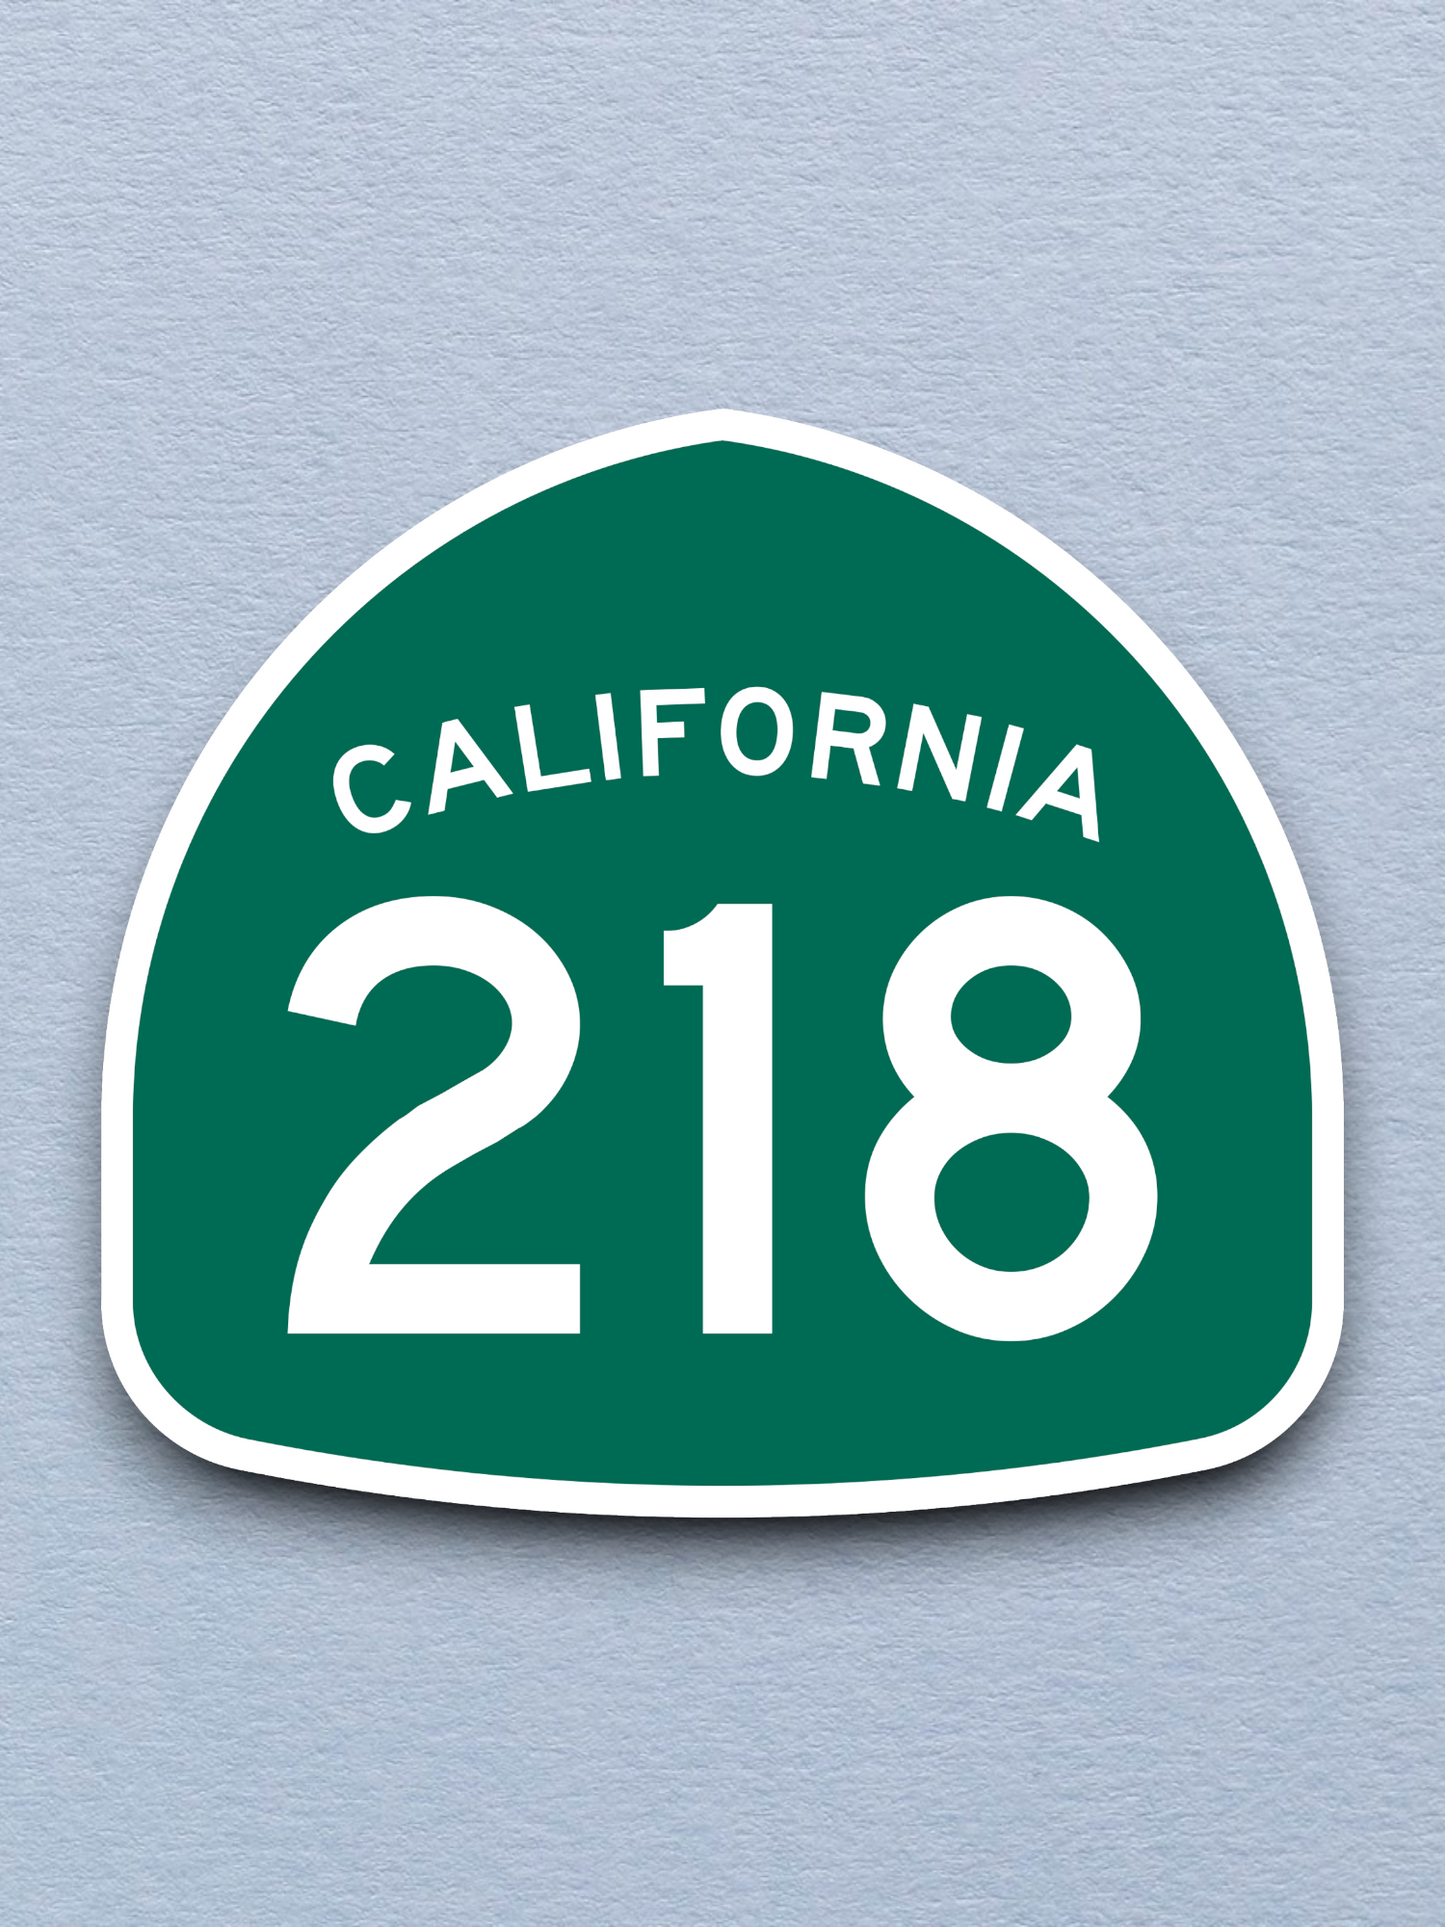 California State Route 218 Sticker